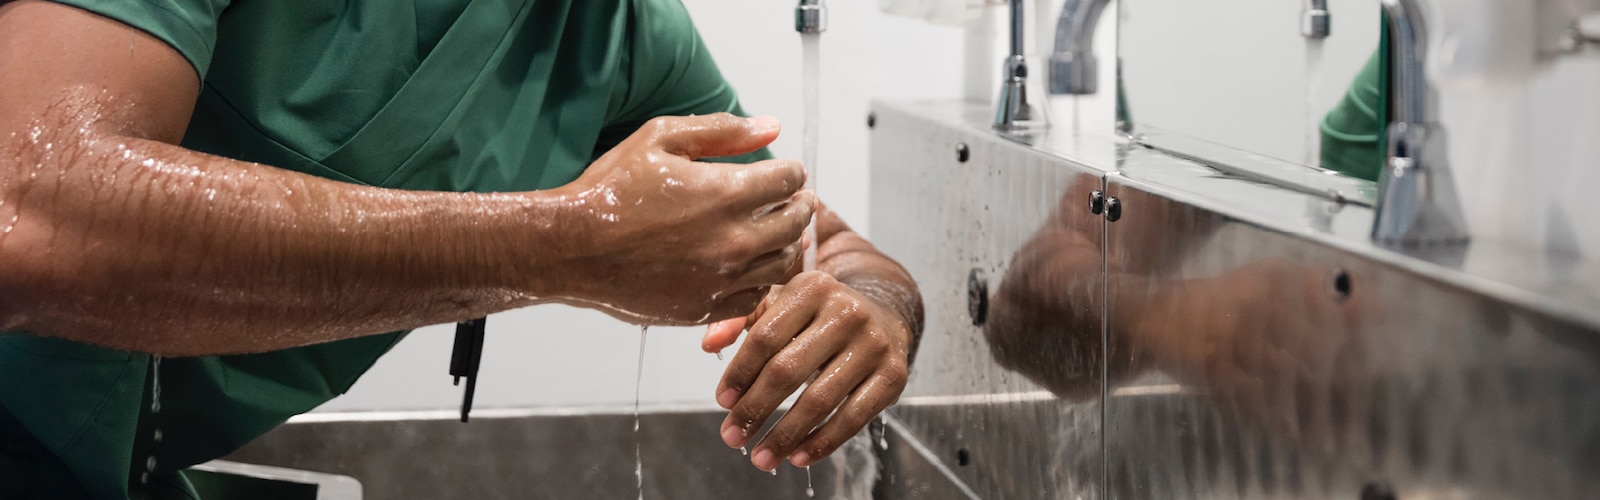 Un médecin se frotte les mains avec du savon avant une opération chirurgicale